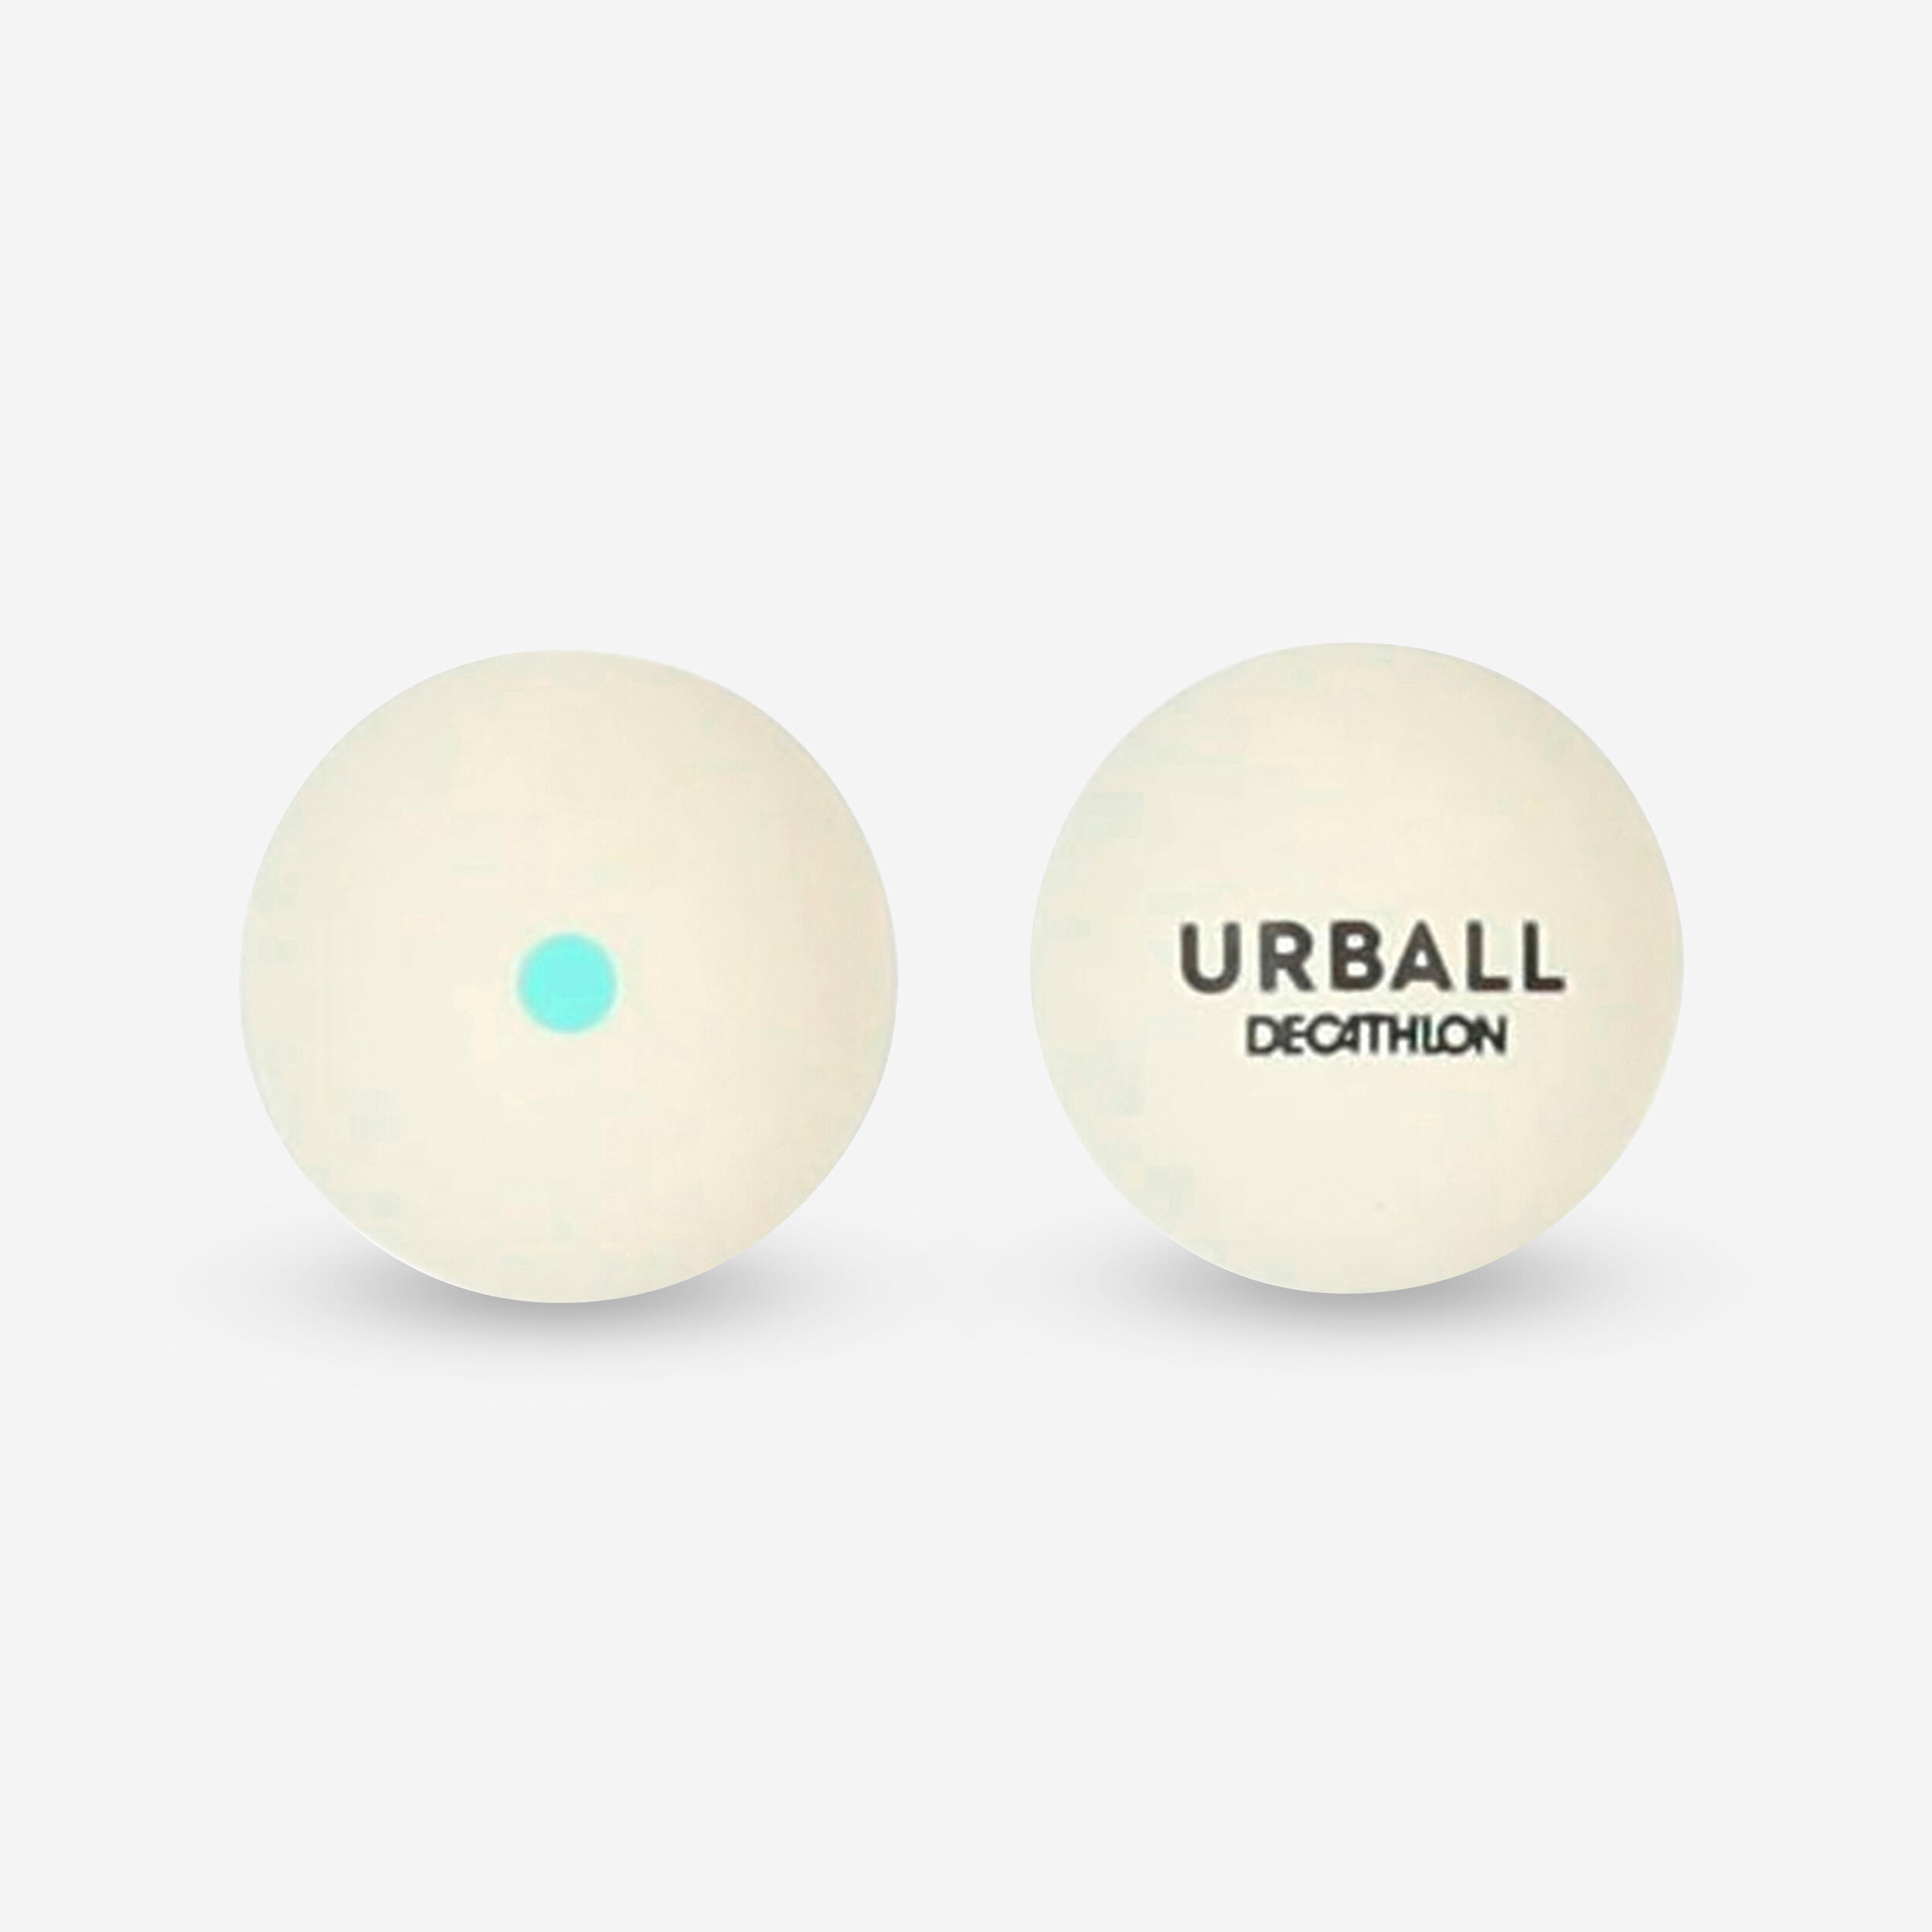 URBALL Gumená loptička (pelota) Pala GPB 100 biela so zelenou bodkou biela